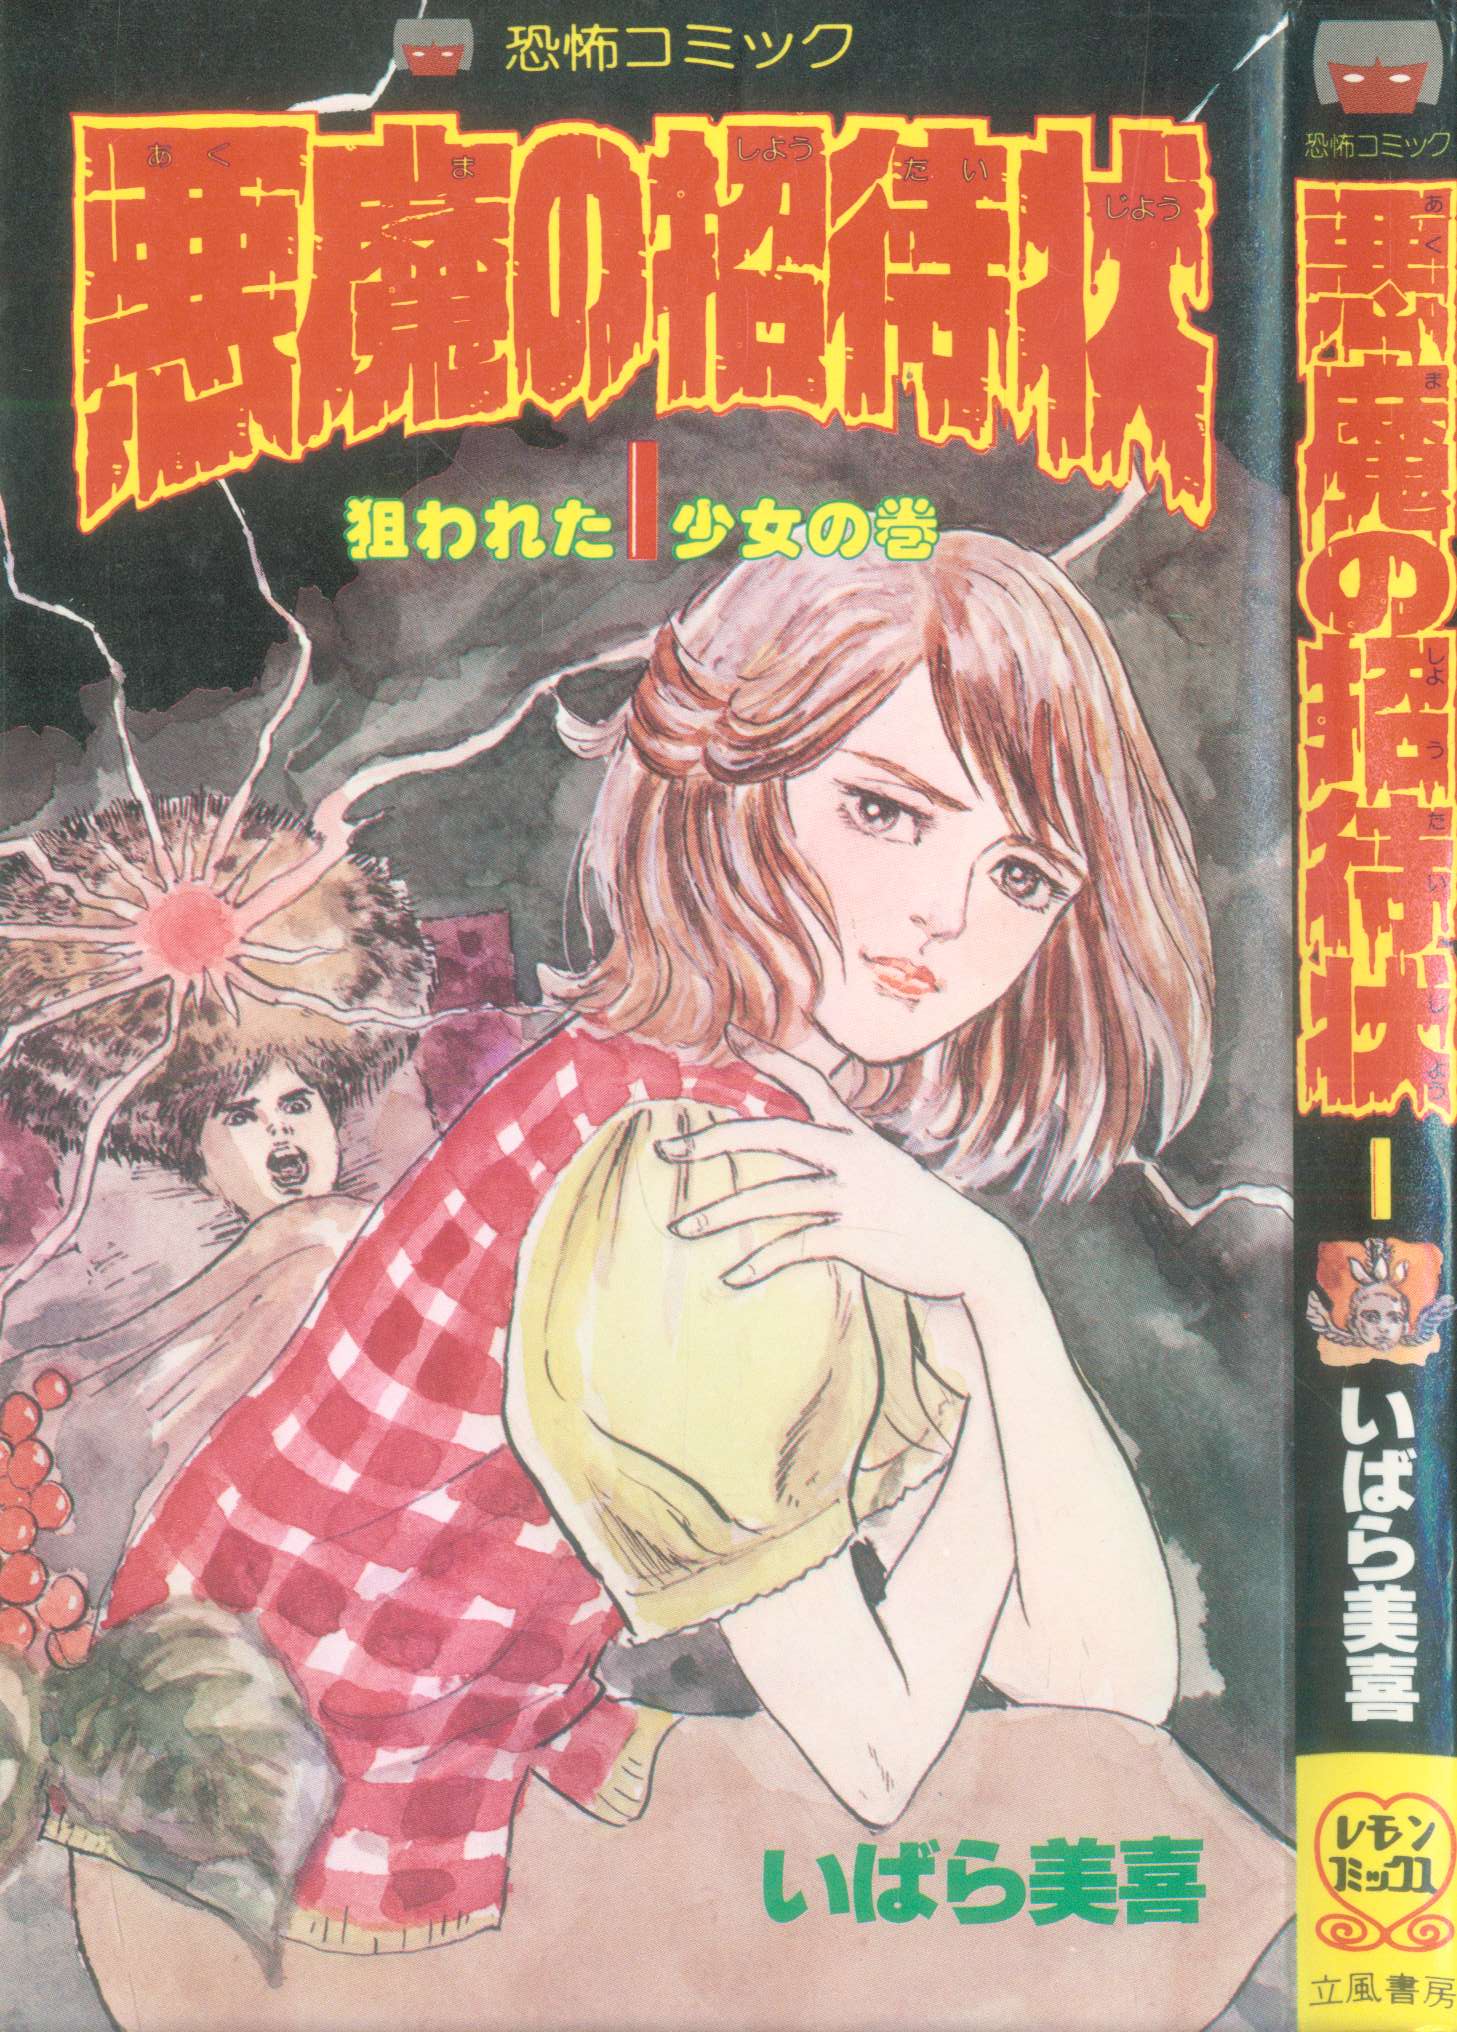 恐怖コミック 悪魔の招待状 全3巻 全初版 いばら美喜 レモンコミックス 